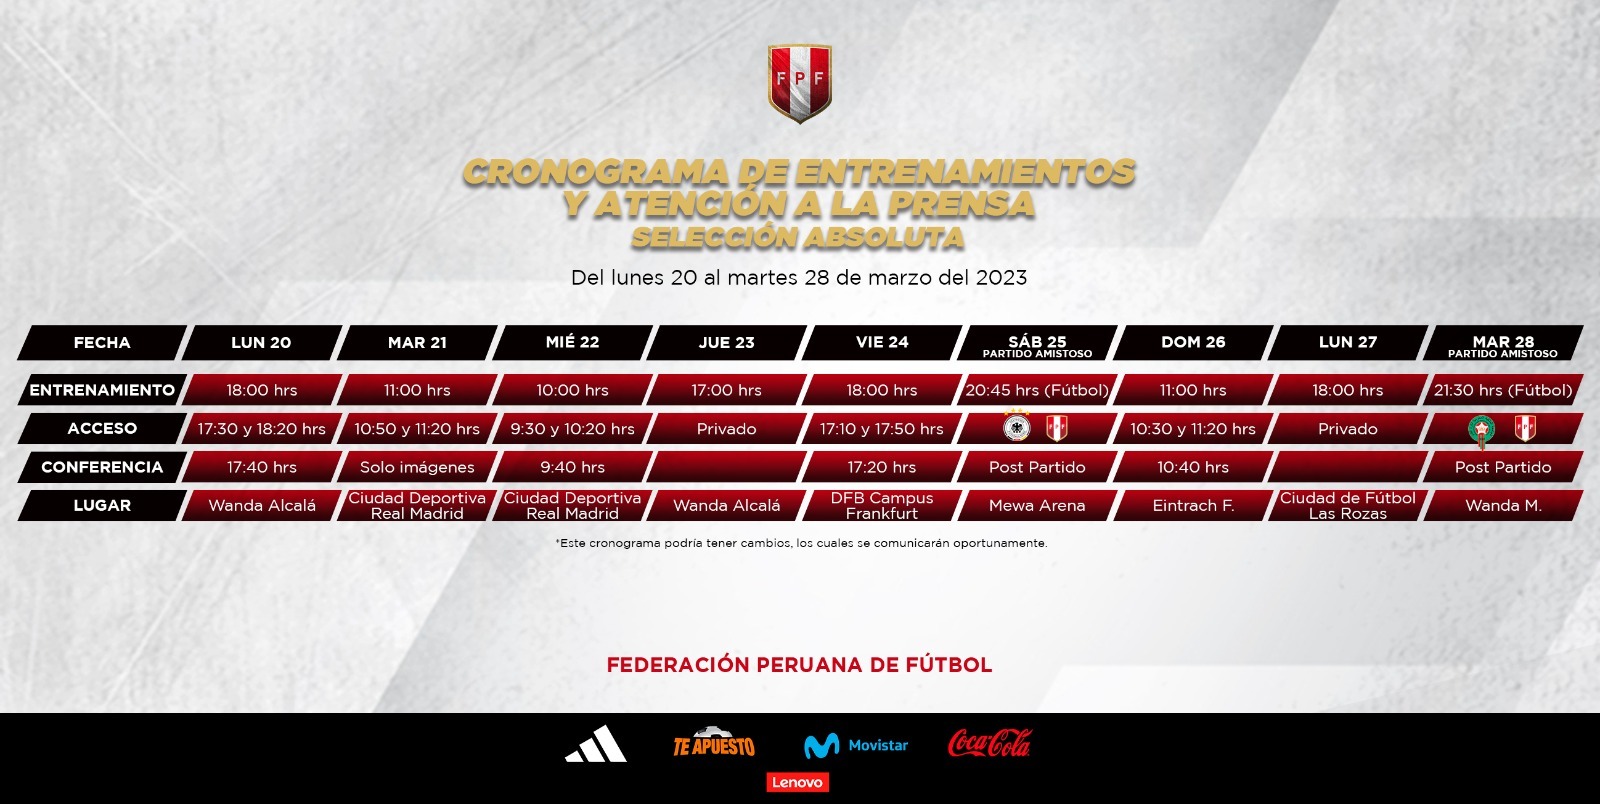 Cronograma de entrenamientos y atención a la prensa de la selección peruana en Europa. (FPF)